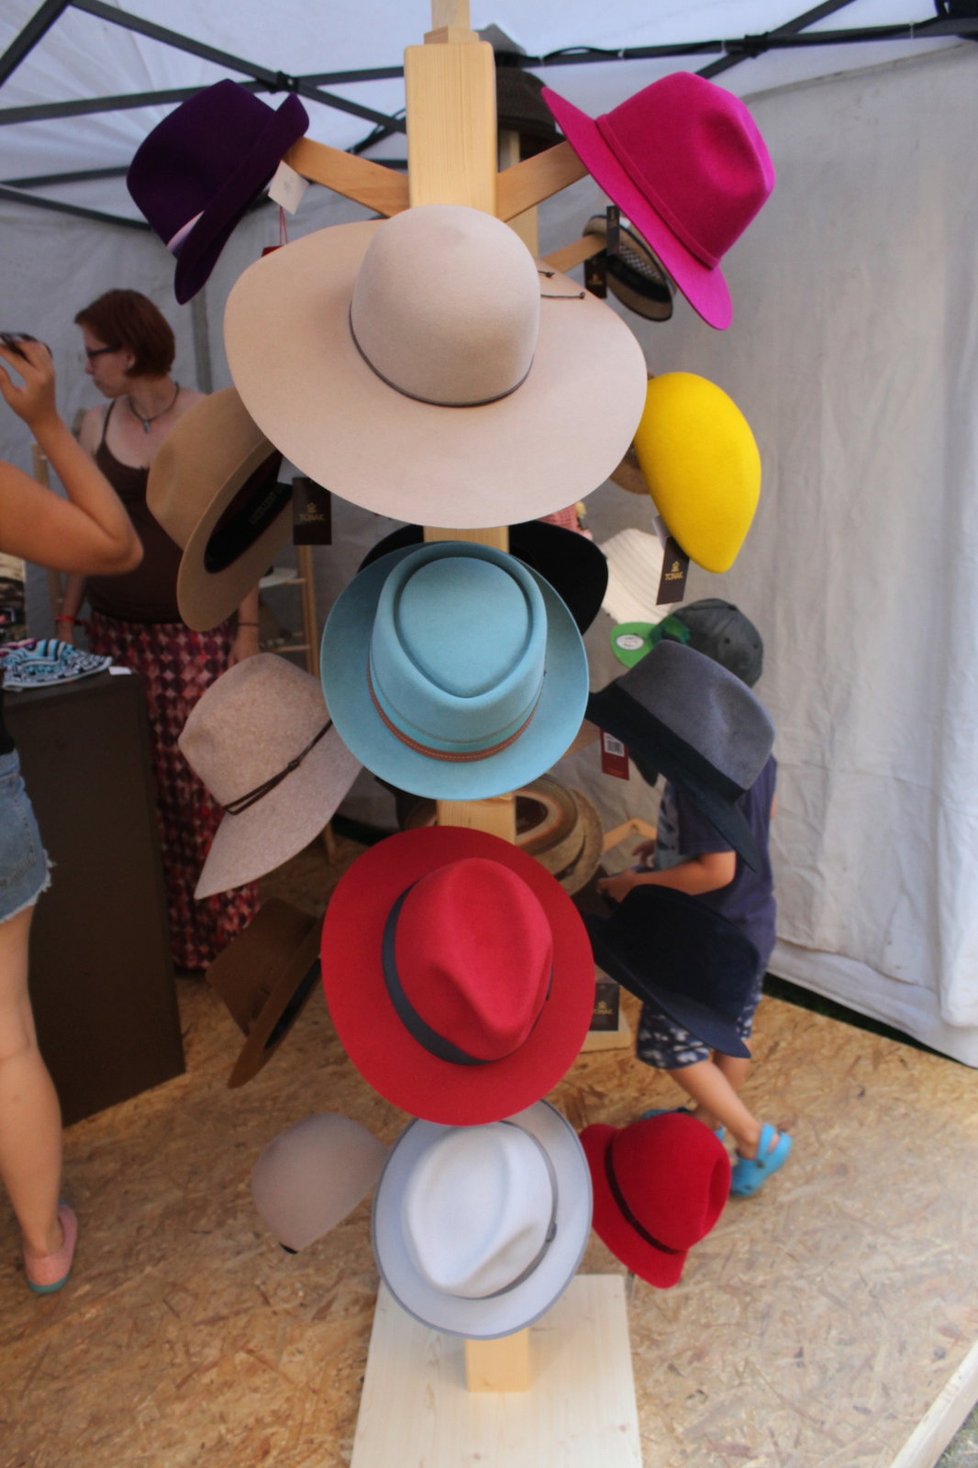 Před dotěrným sluníčkem se můžete na festivalu bránit kloboukem. Je z čeho vybírat.